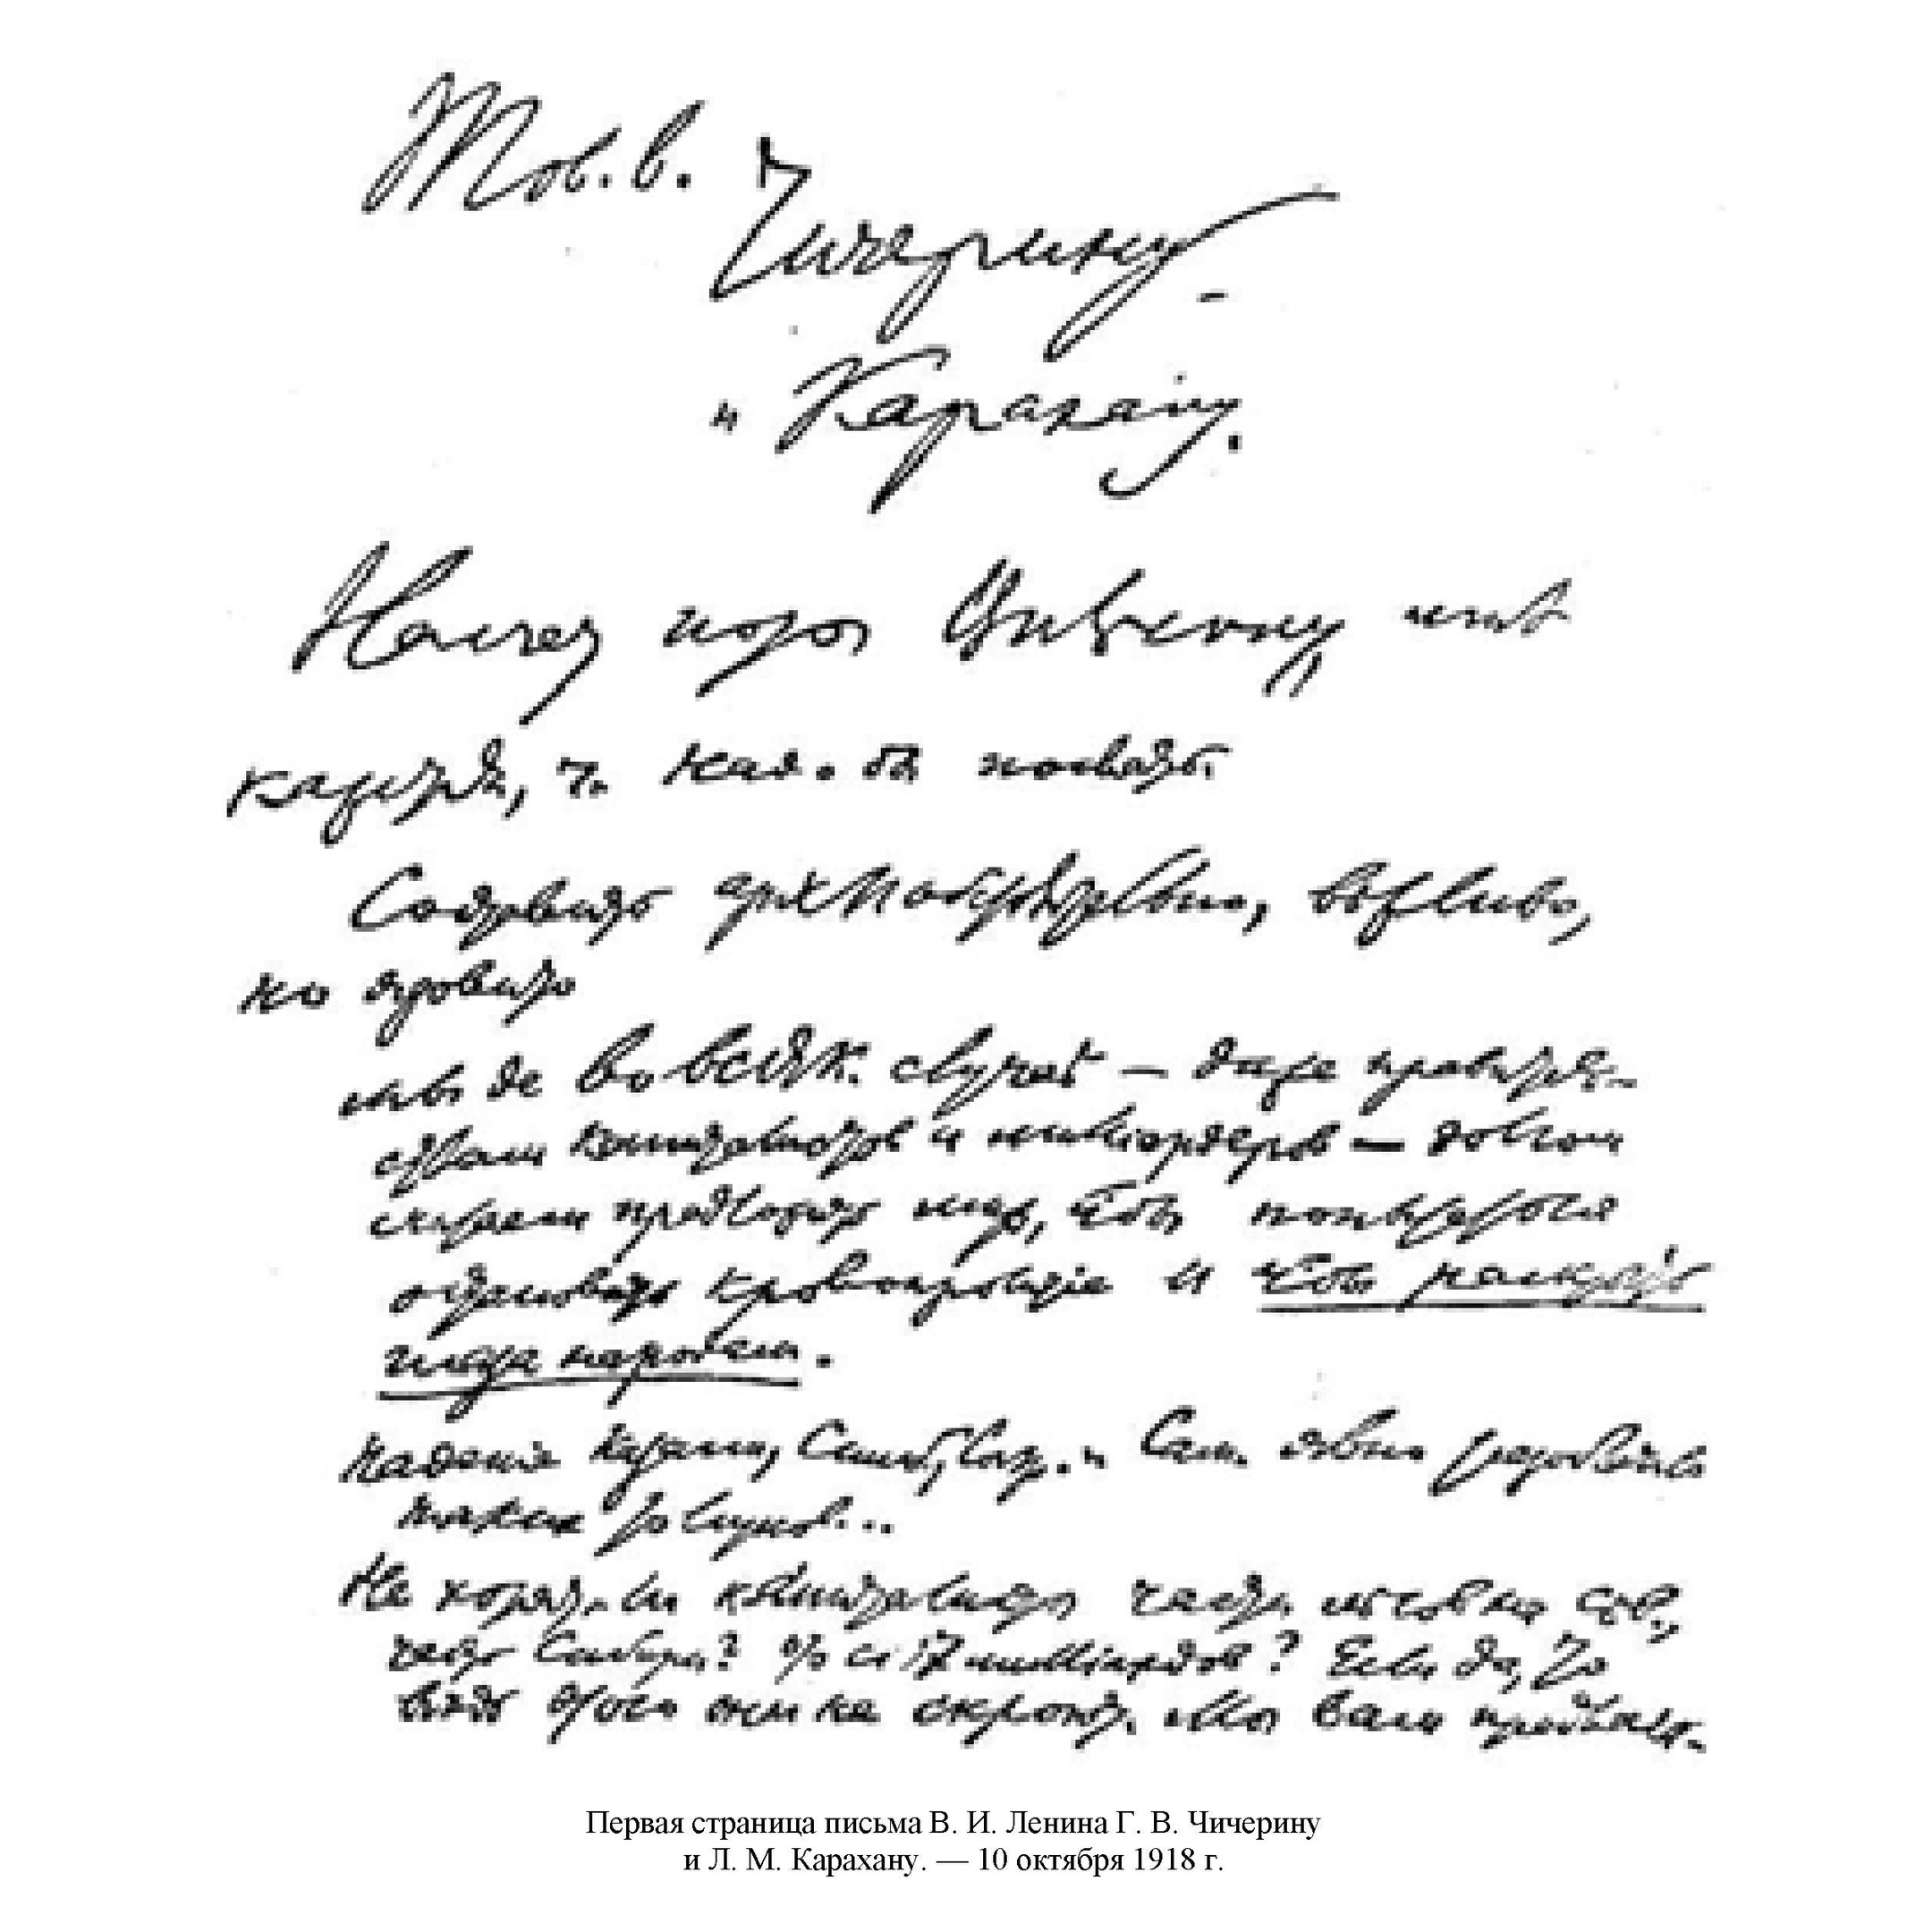 Письмо съезду ленина 1922. Письмо Ленина. Письмо к съезду Ленина. Послание Ленина. Последние письма Ленина.